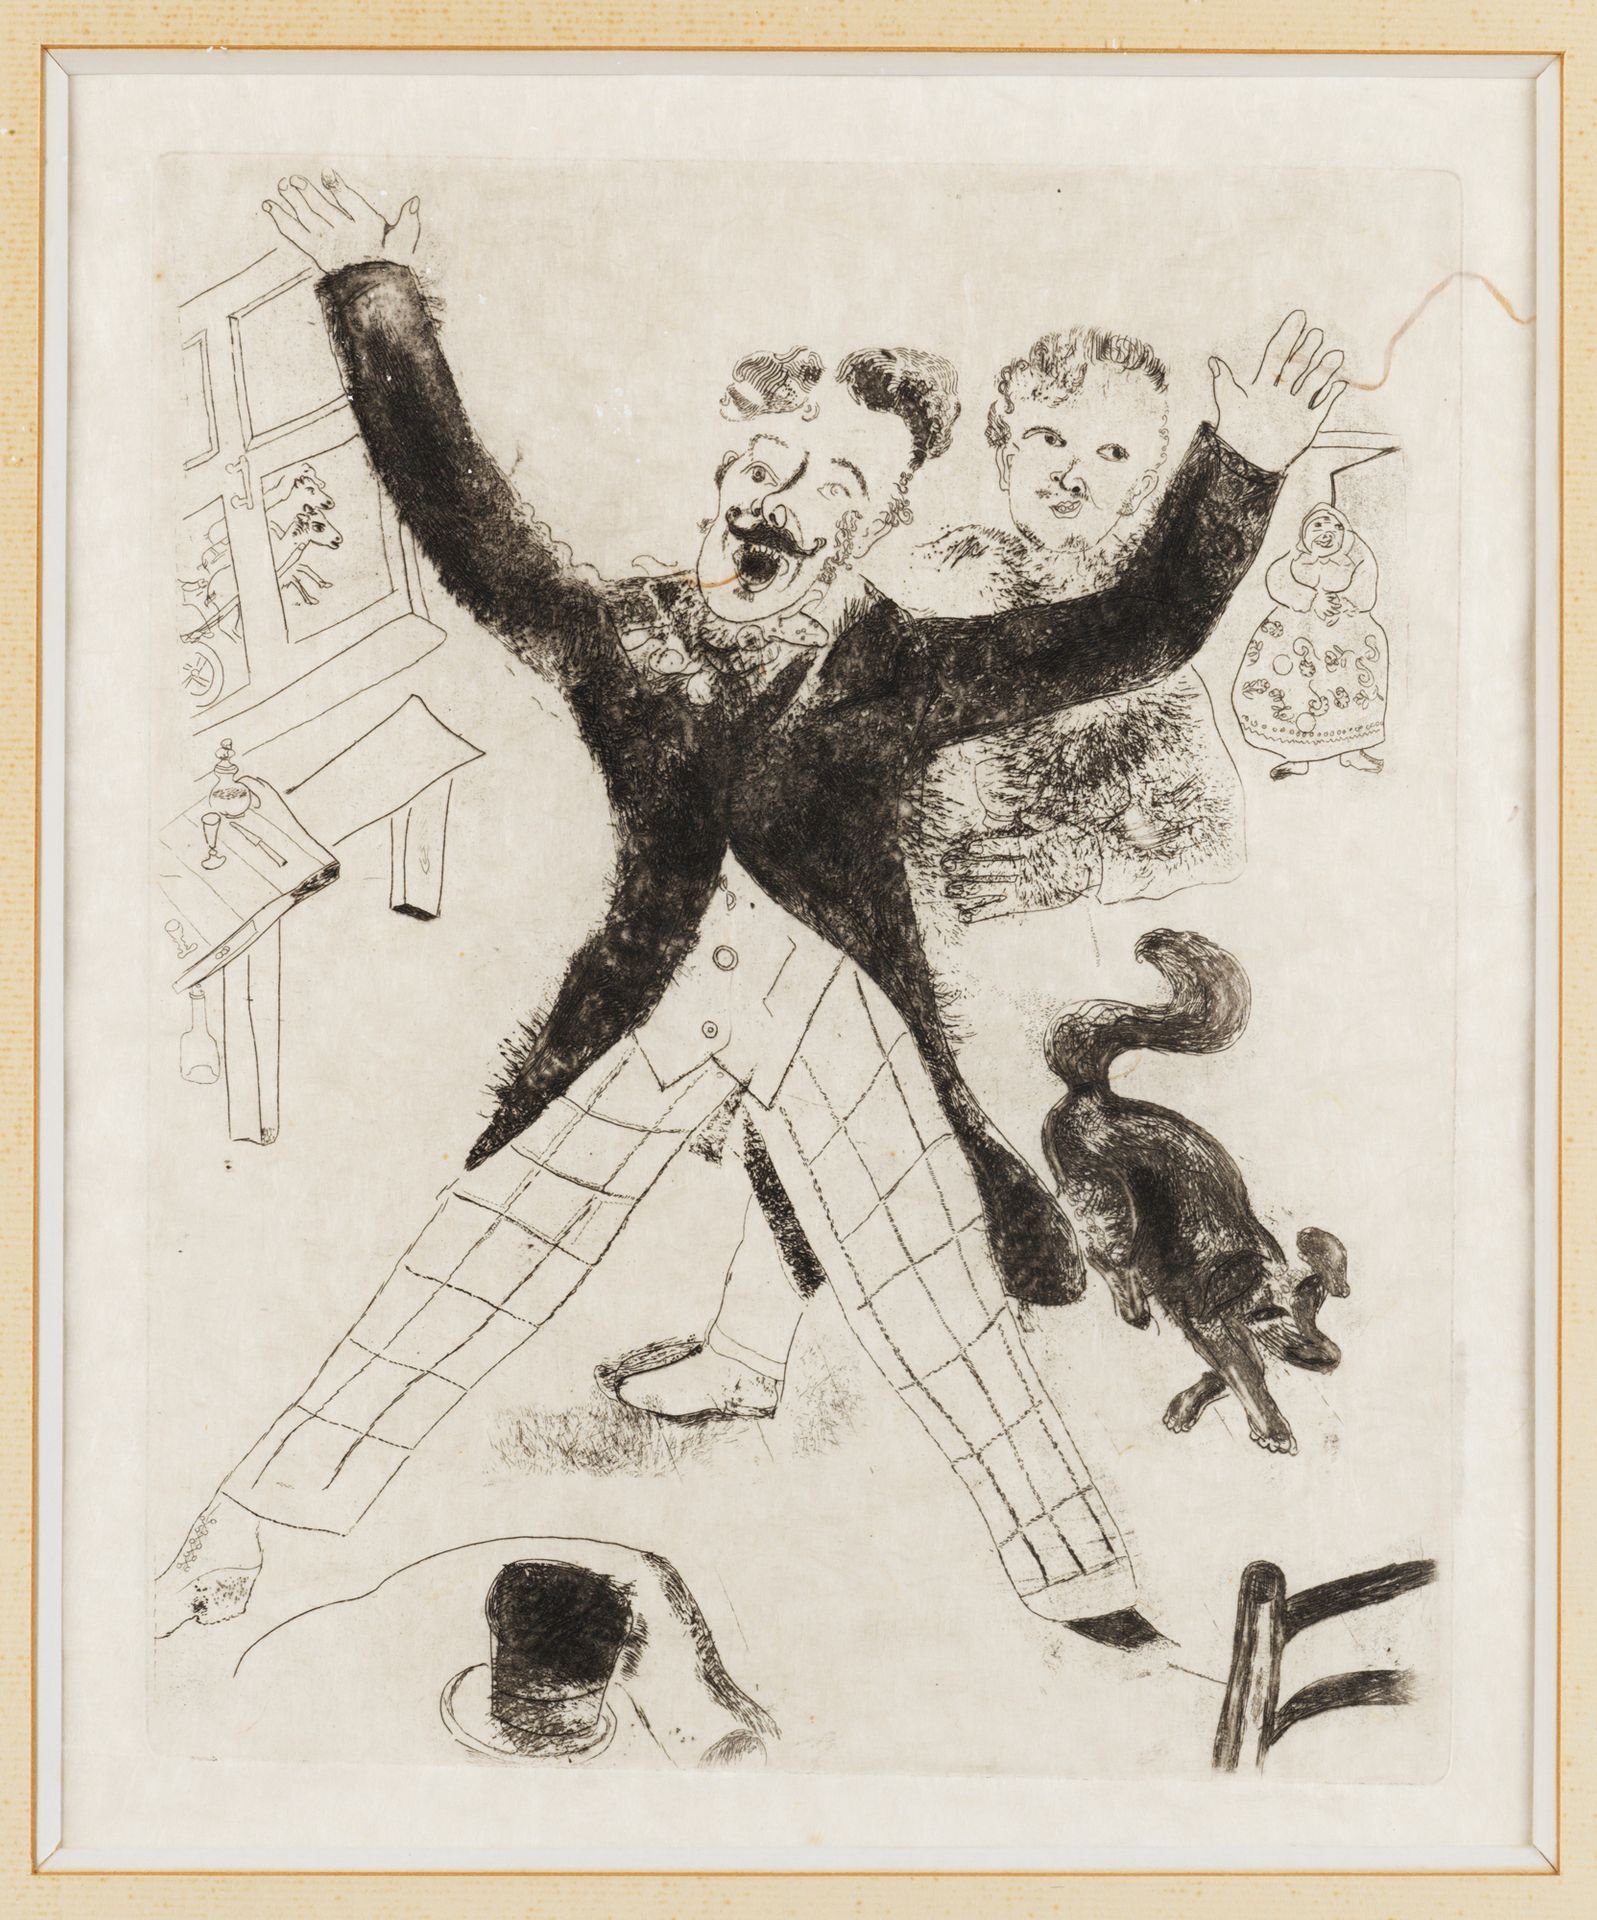 MARC CHAGALL (1887-1937) SANS TITRE
Eau forte sur Japon
29 x 23,5 cm